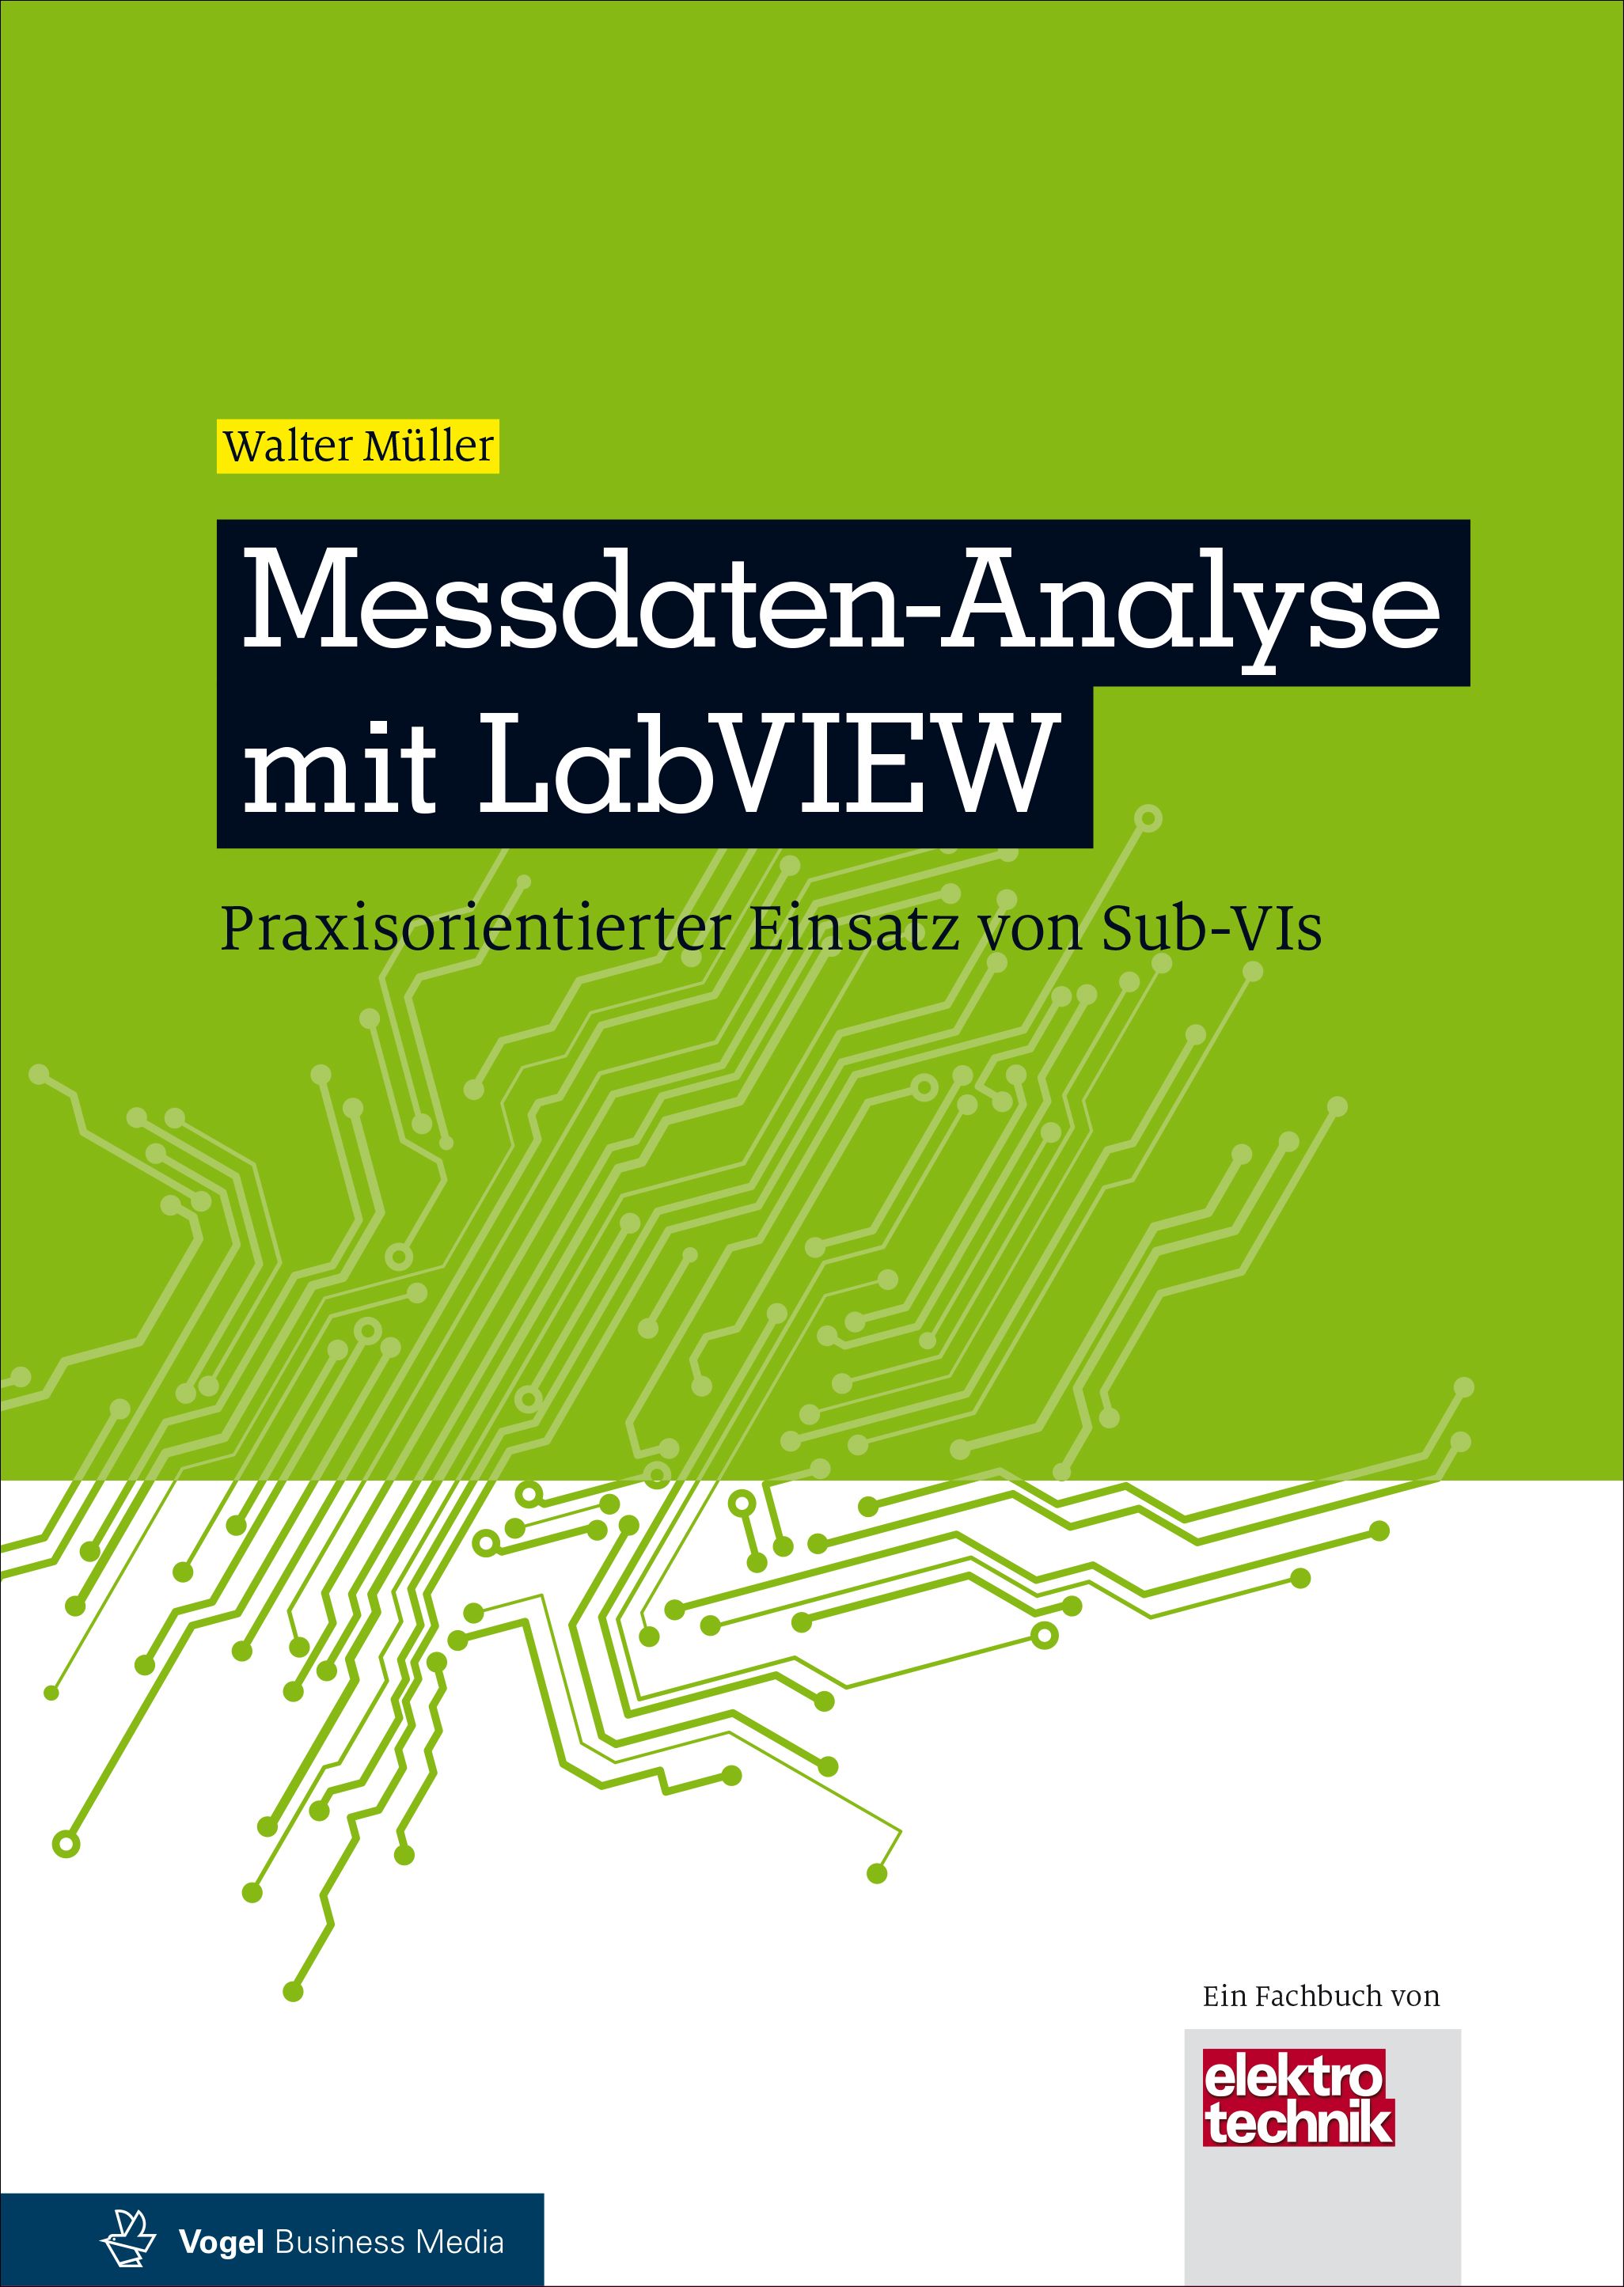 Das Fachbuch "Messdaten-Analyse mit LabVIEW. Praxisorientierter Einsatz von Sub-VIs" von Walter Müller